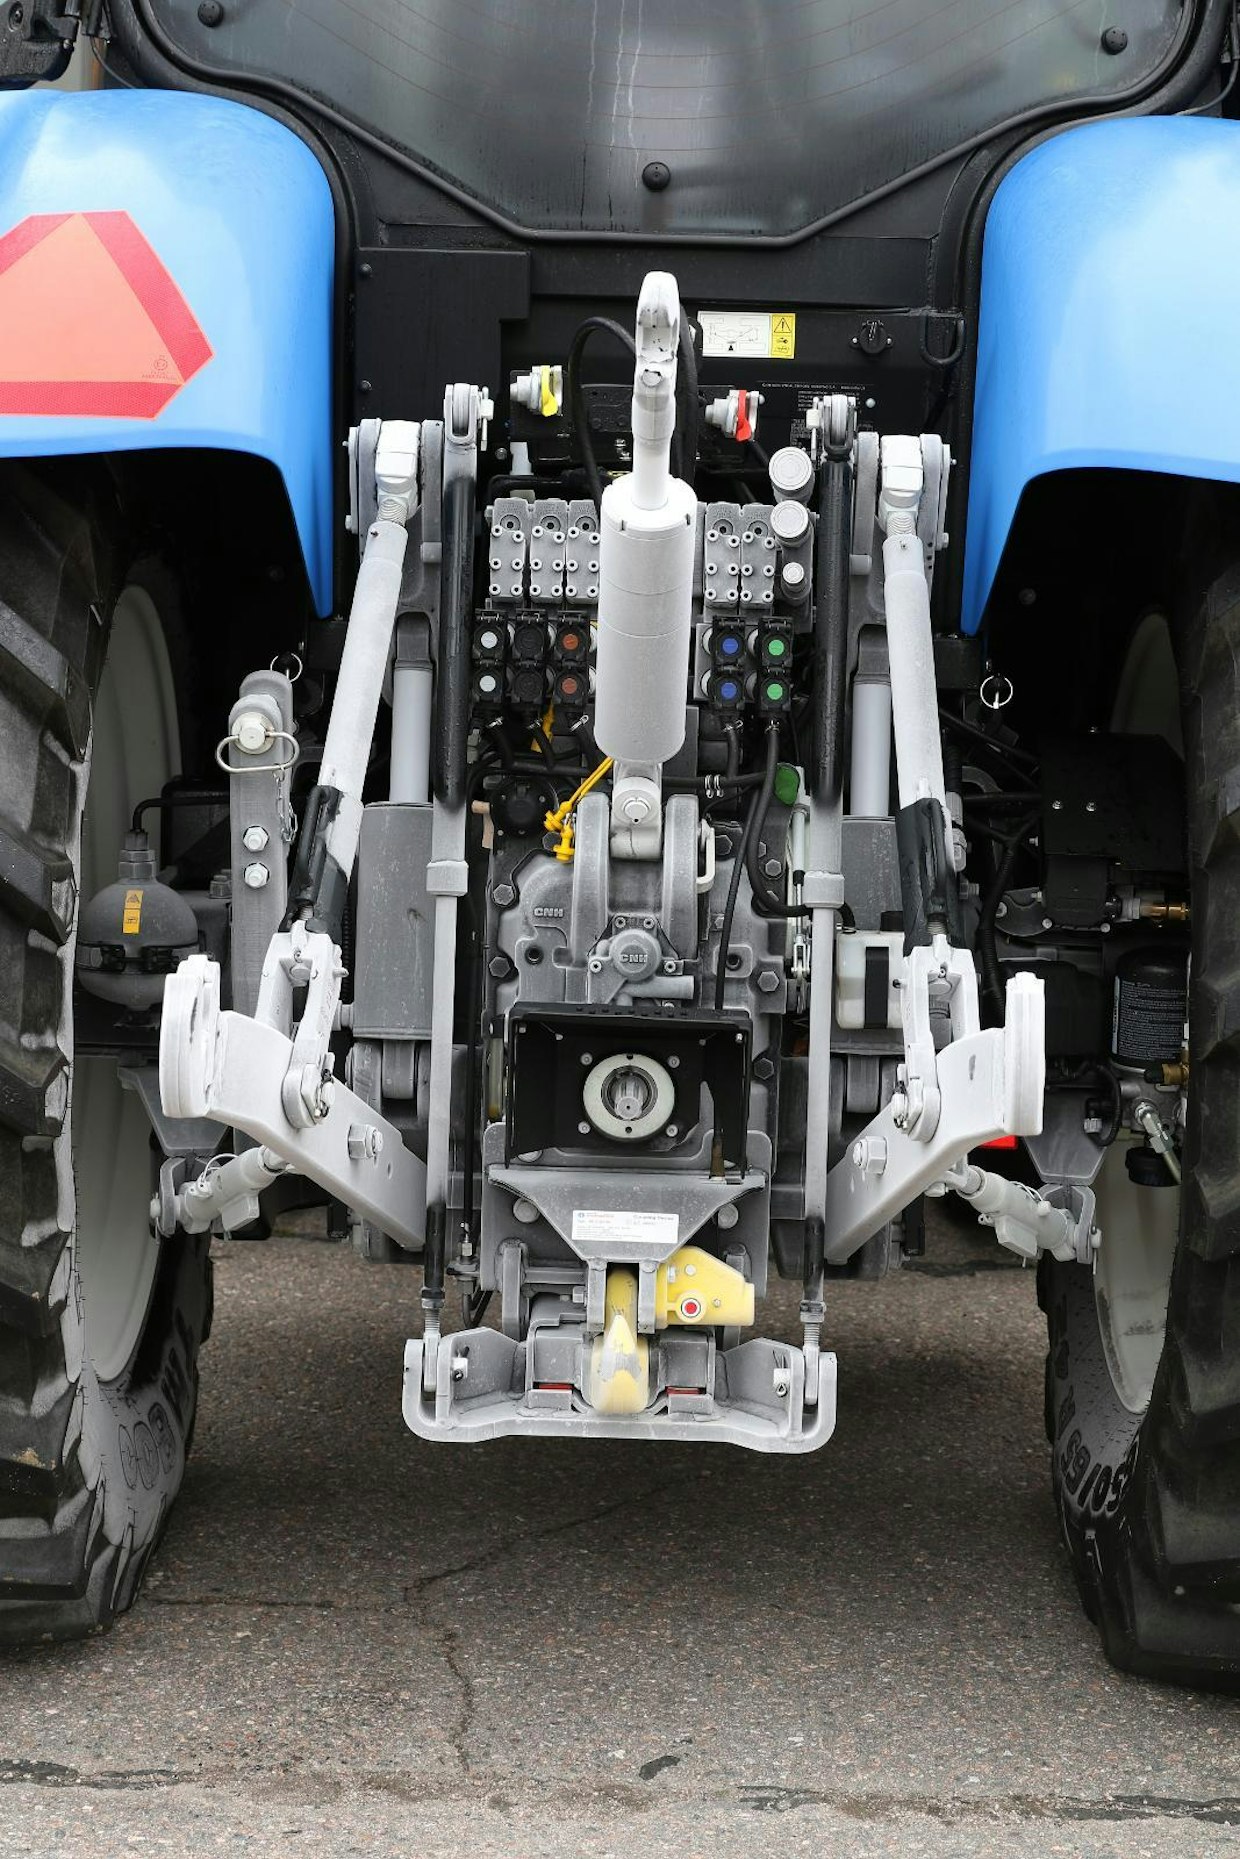 Kahdensadan hevosvoiman teholuokassa uuden traktoriasetuksen mukaiset traktorit varustetaan usein kaksipiirisellä paineilmajarrujärjestelmällä, minkä lisäksi traktoriin on sallittua asentaa tuttu ja turvallinen yksipiirinen hydraulijarruventtiili. Paineilmaliittiminä on yleisesti kouraliittimet, kuten kuvan New Hollandissa.